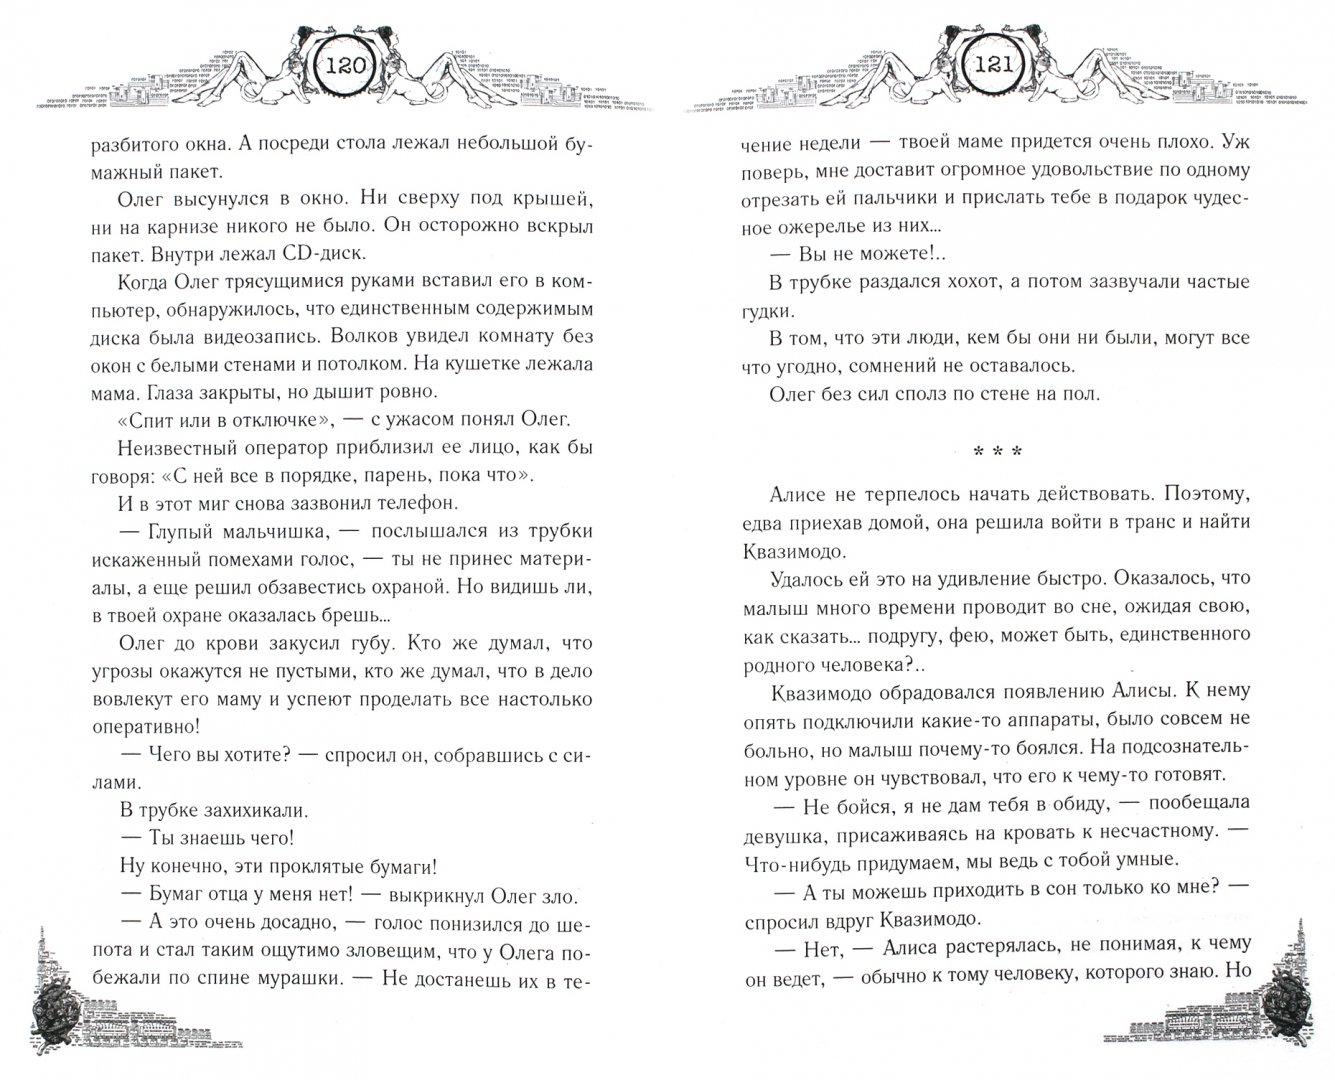 Иллюстрация 1 из 2 для Цирк кошмаров - Рой, Неволина | Лабиринт - книги. Источник: Лабиринт